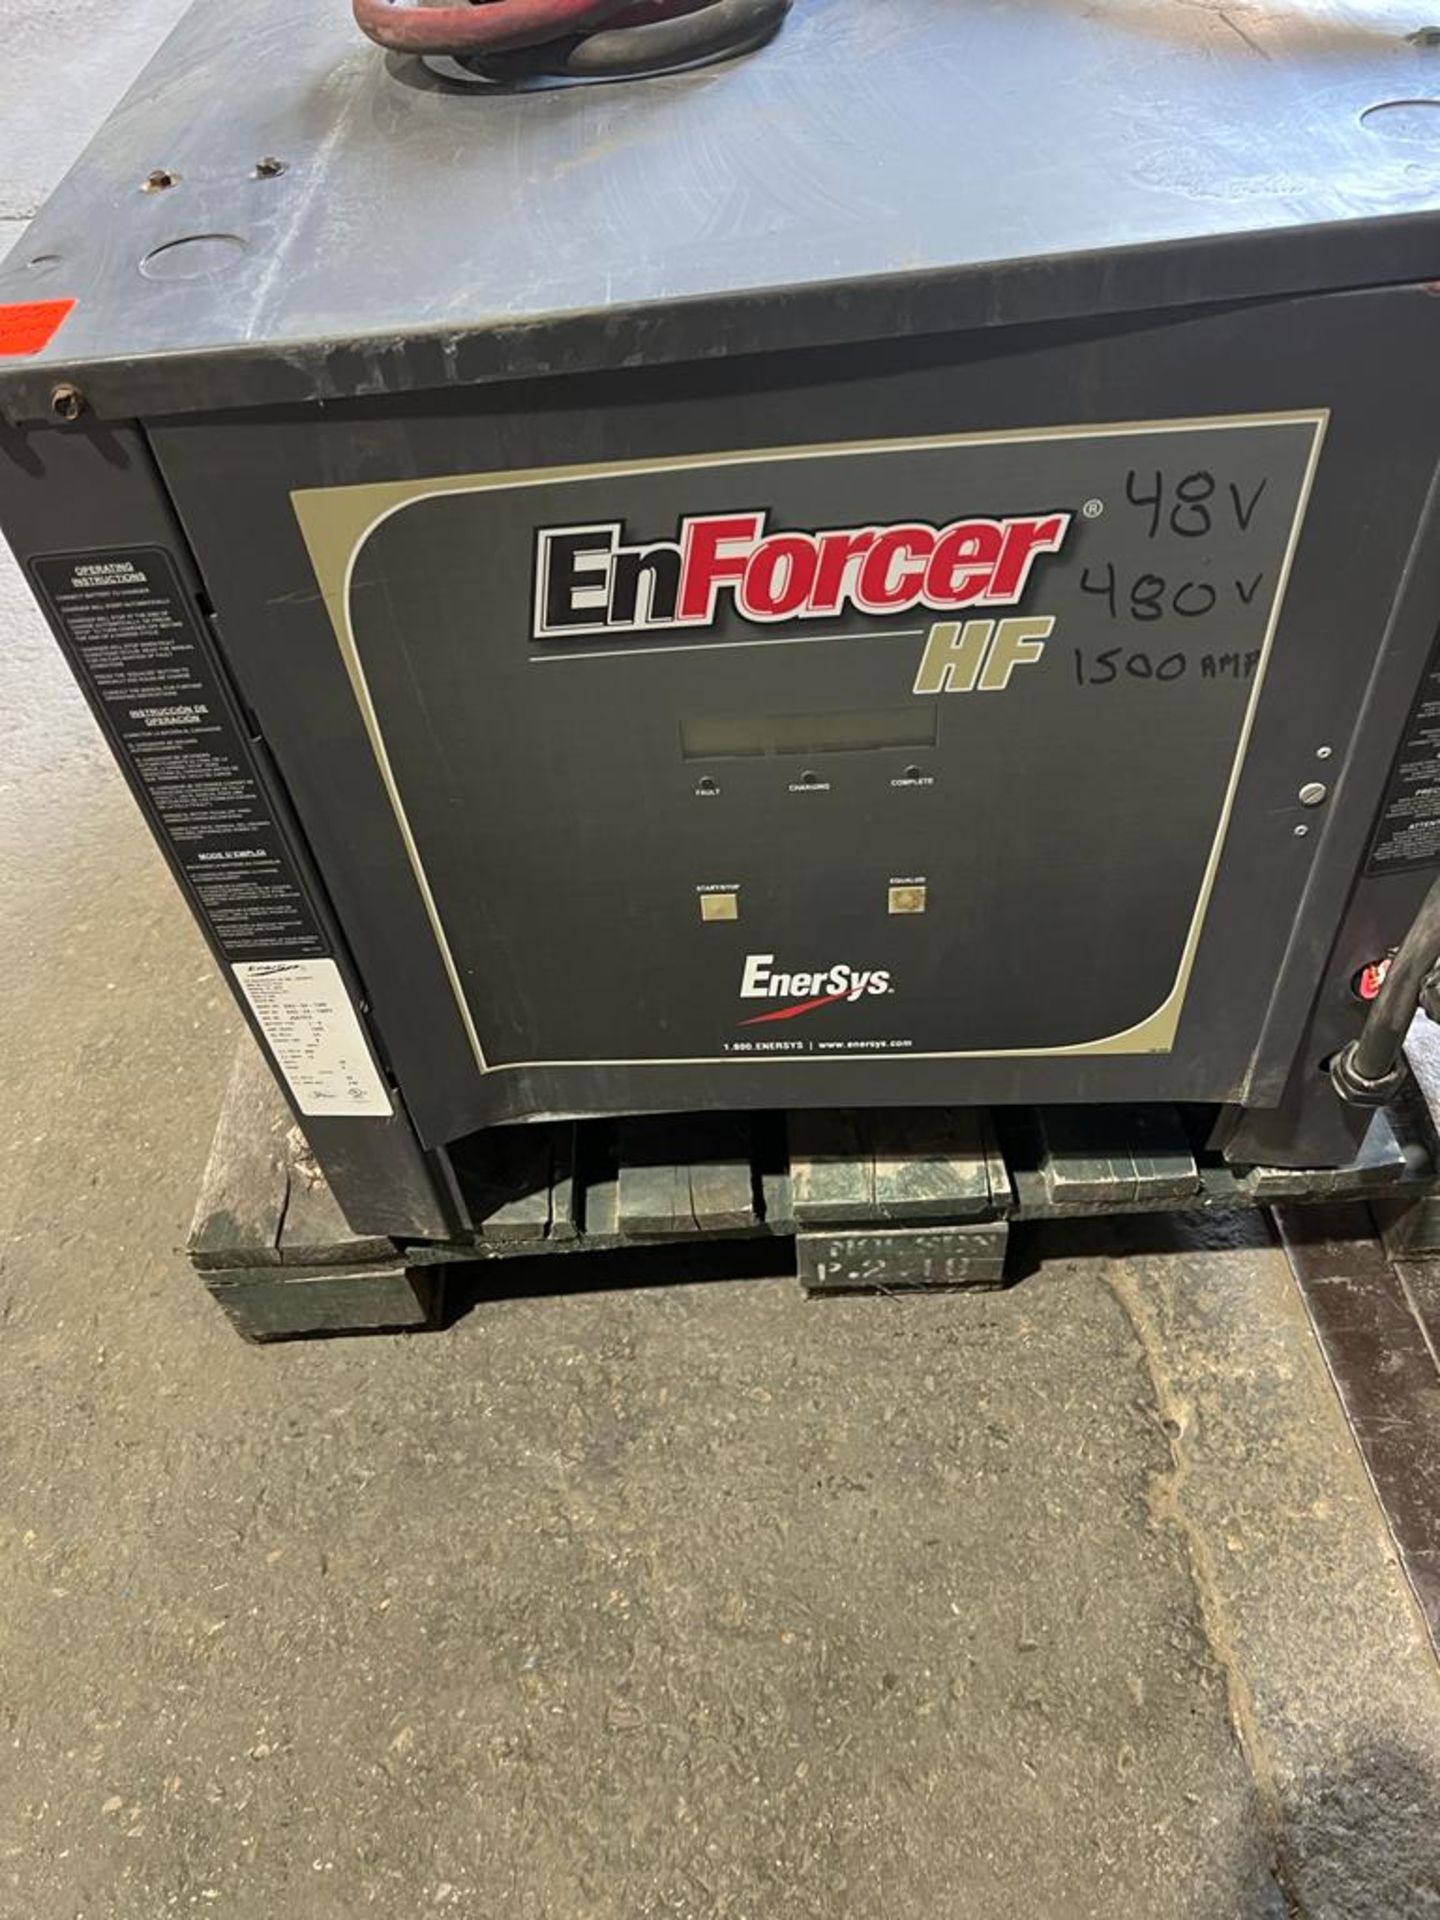 Enersys Enforcer HF Forklift Battery Chrager - 48V - 480V 3 phase input